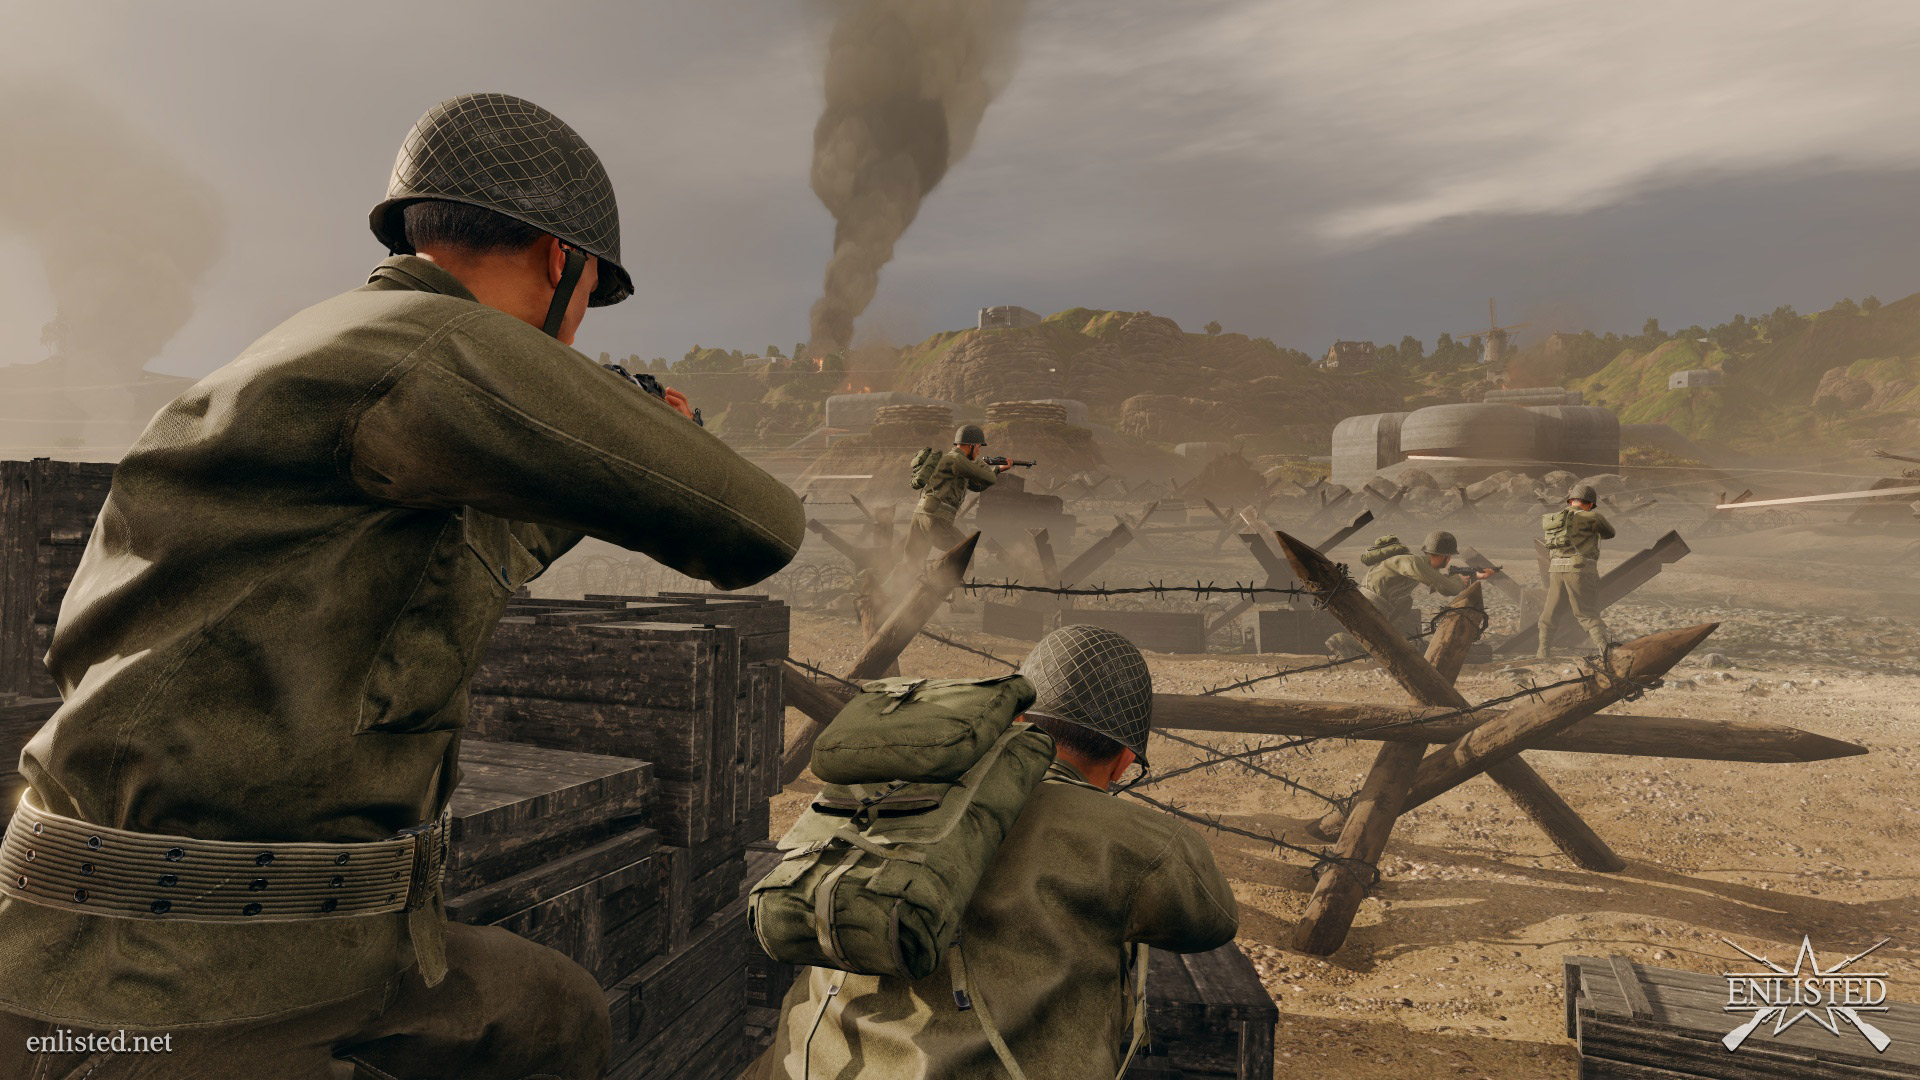 Patrzymy na pierwsze obrazki godnego rywala dla Battlefielda?